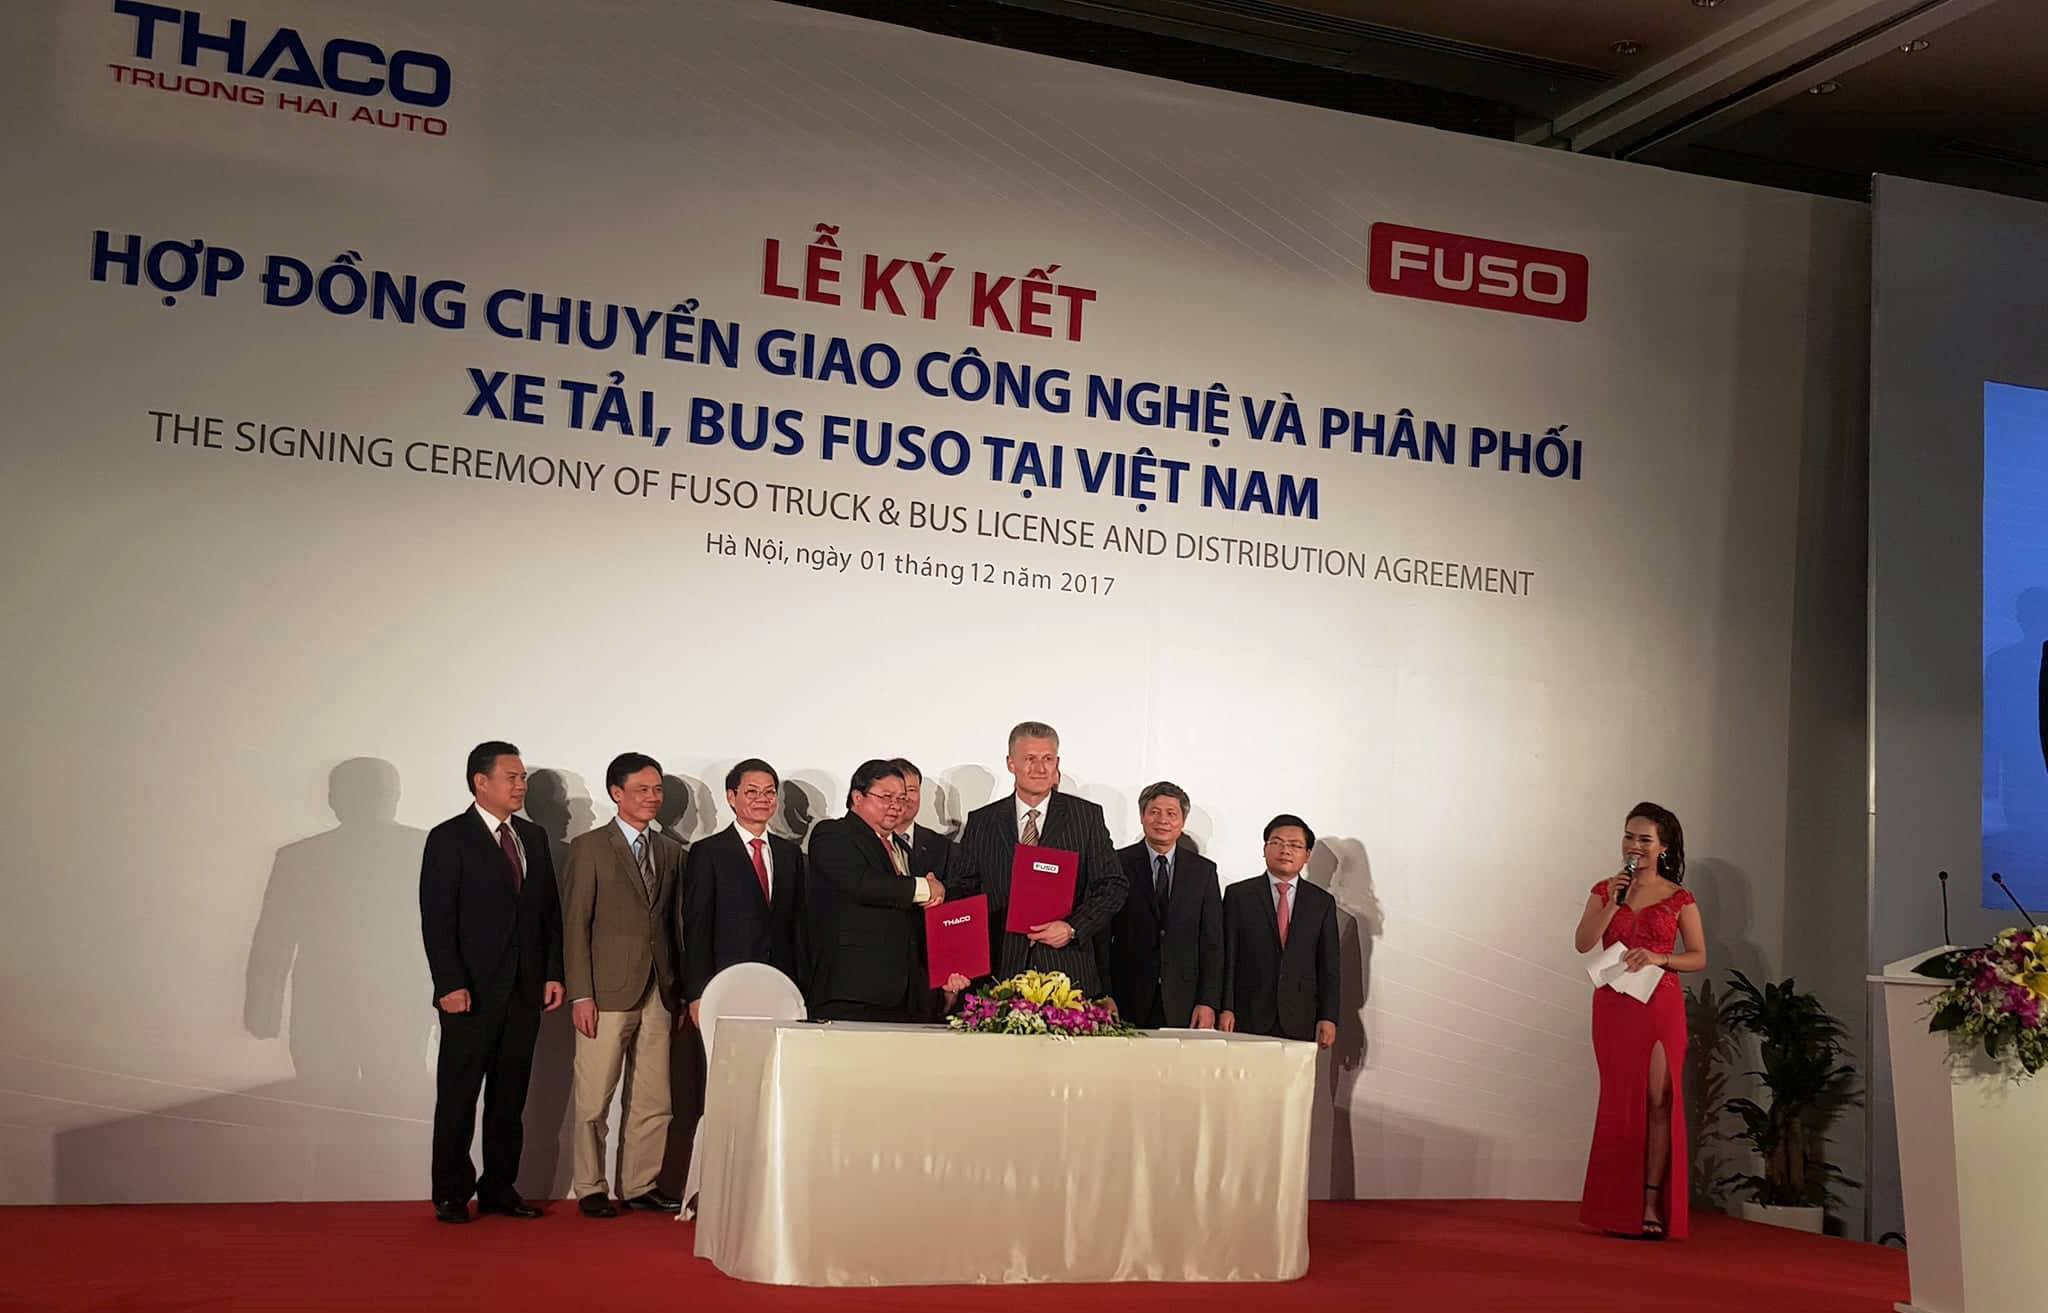 Thaco nhận quyền phân phối xe tải, bus Fuso từ Mercedes Việt Nam